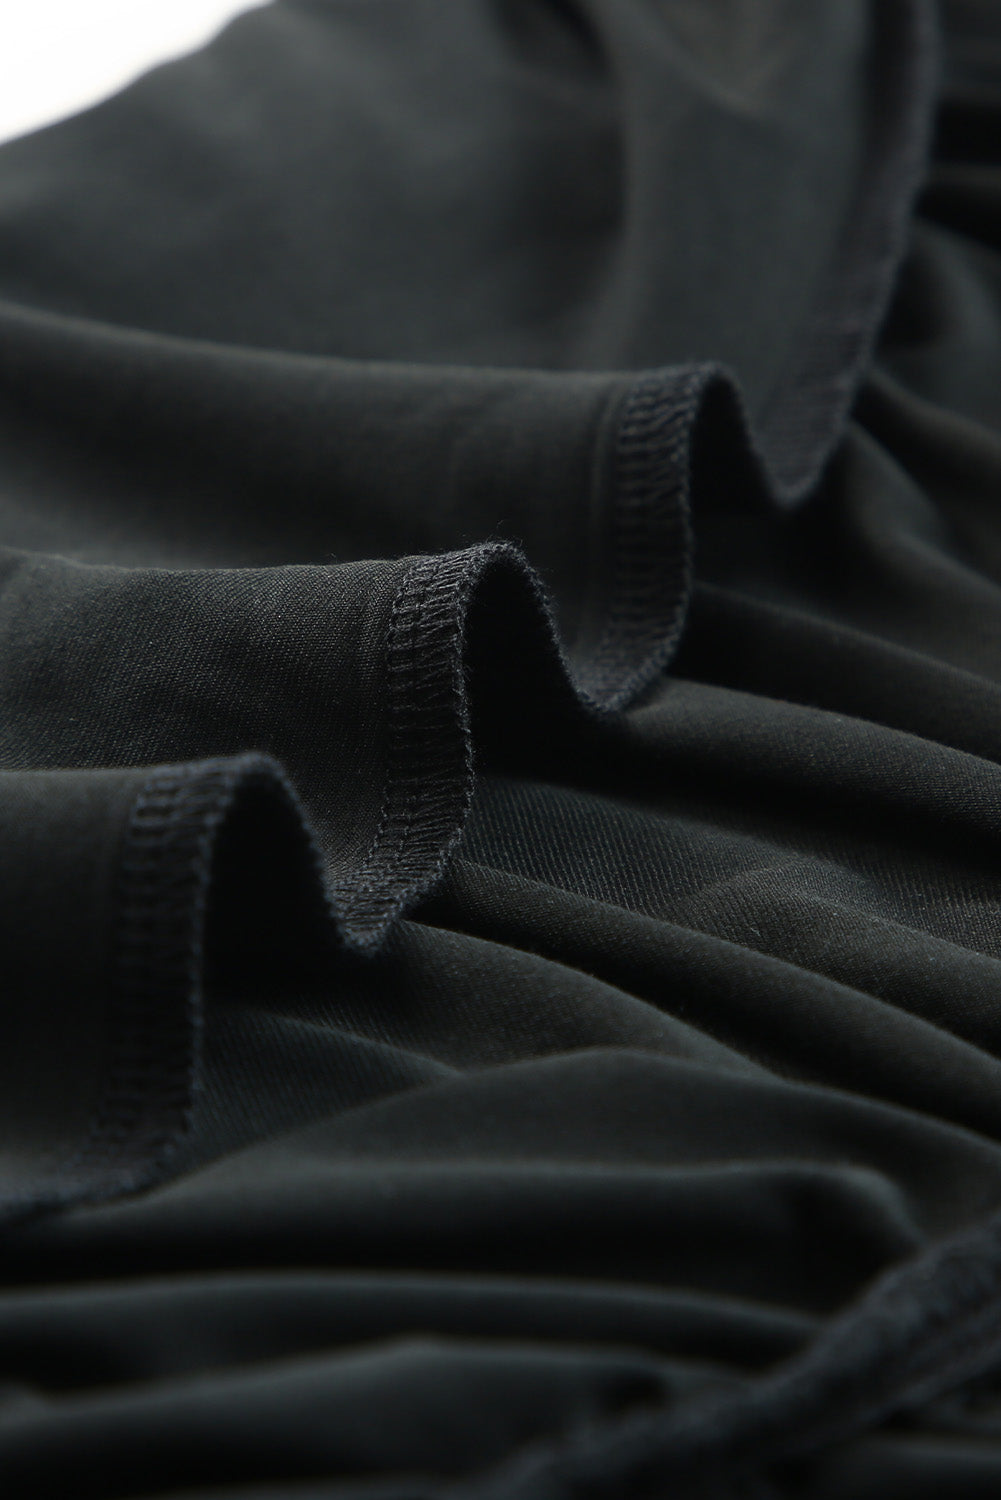 Crna haljina kratkih rukava s naborima na jedno rame uz donji dio